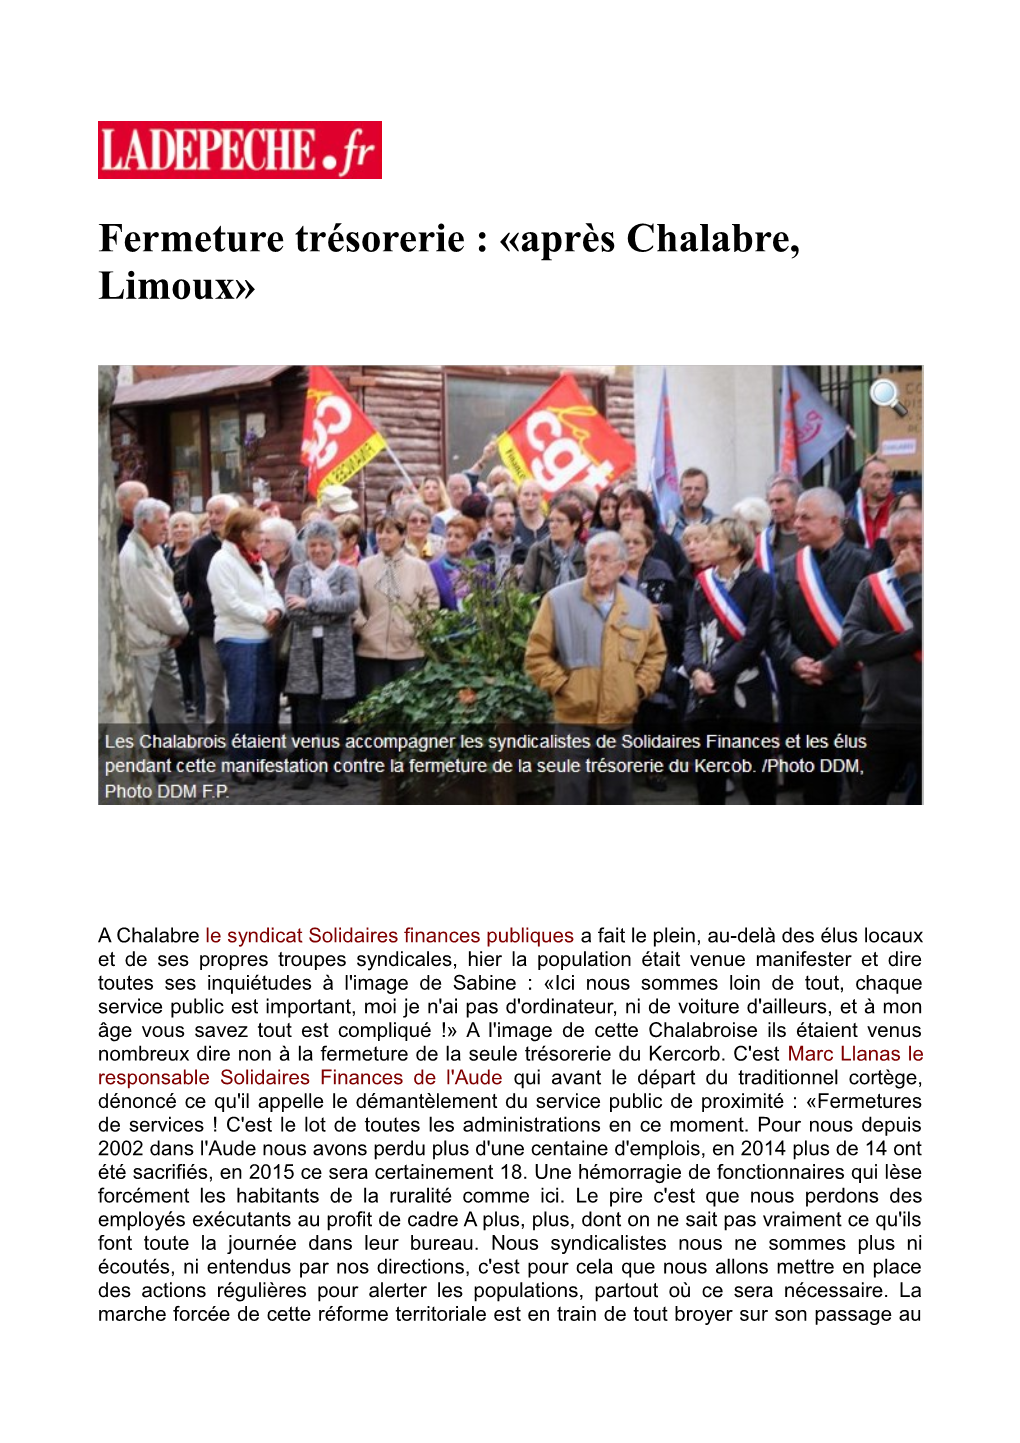 Fermeture Trésorerie : «Après Chalabre, Limoux»